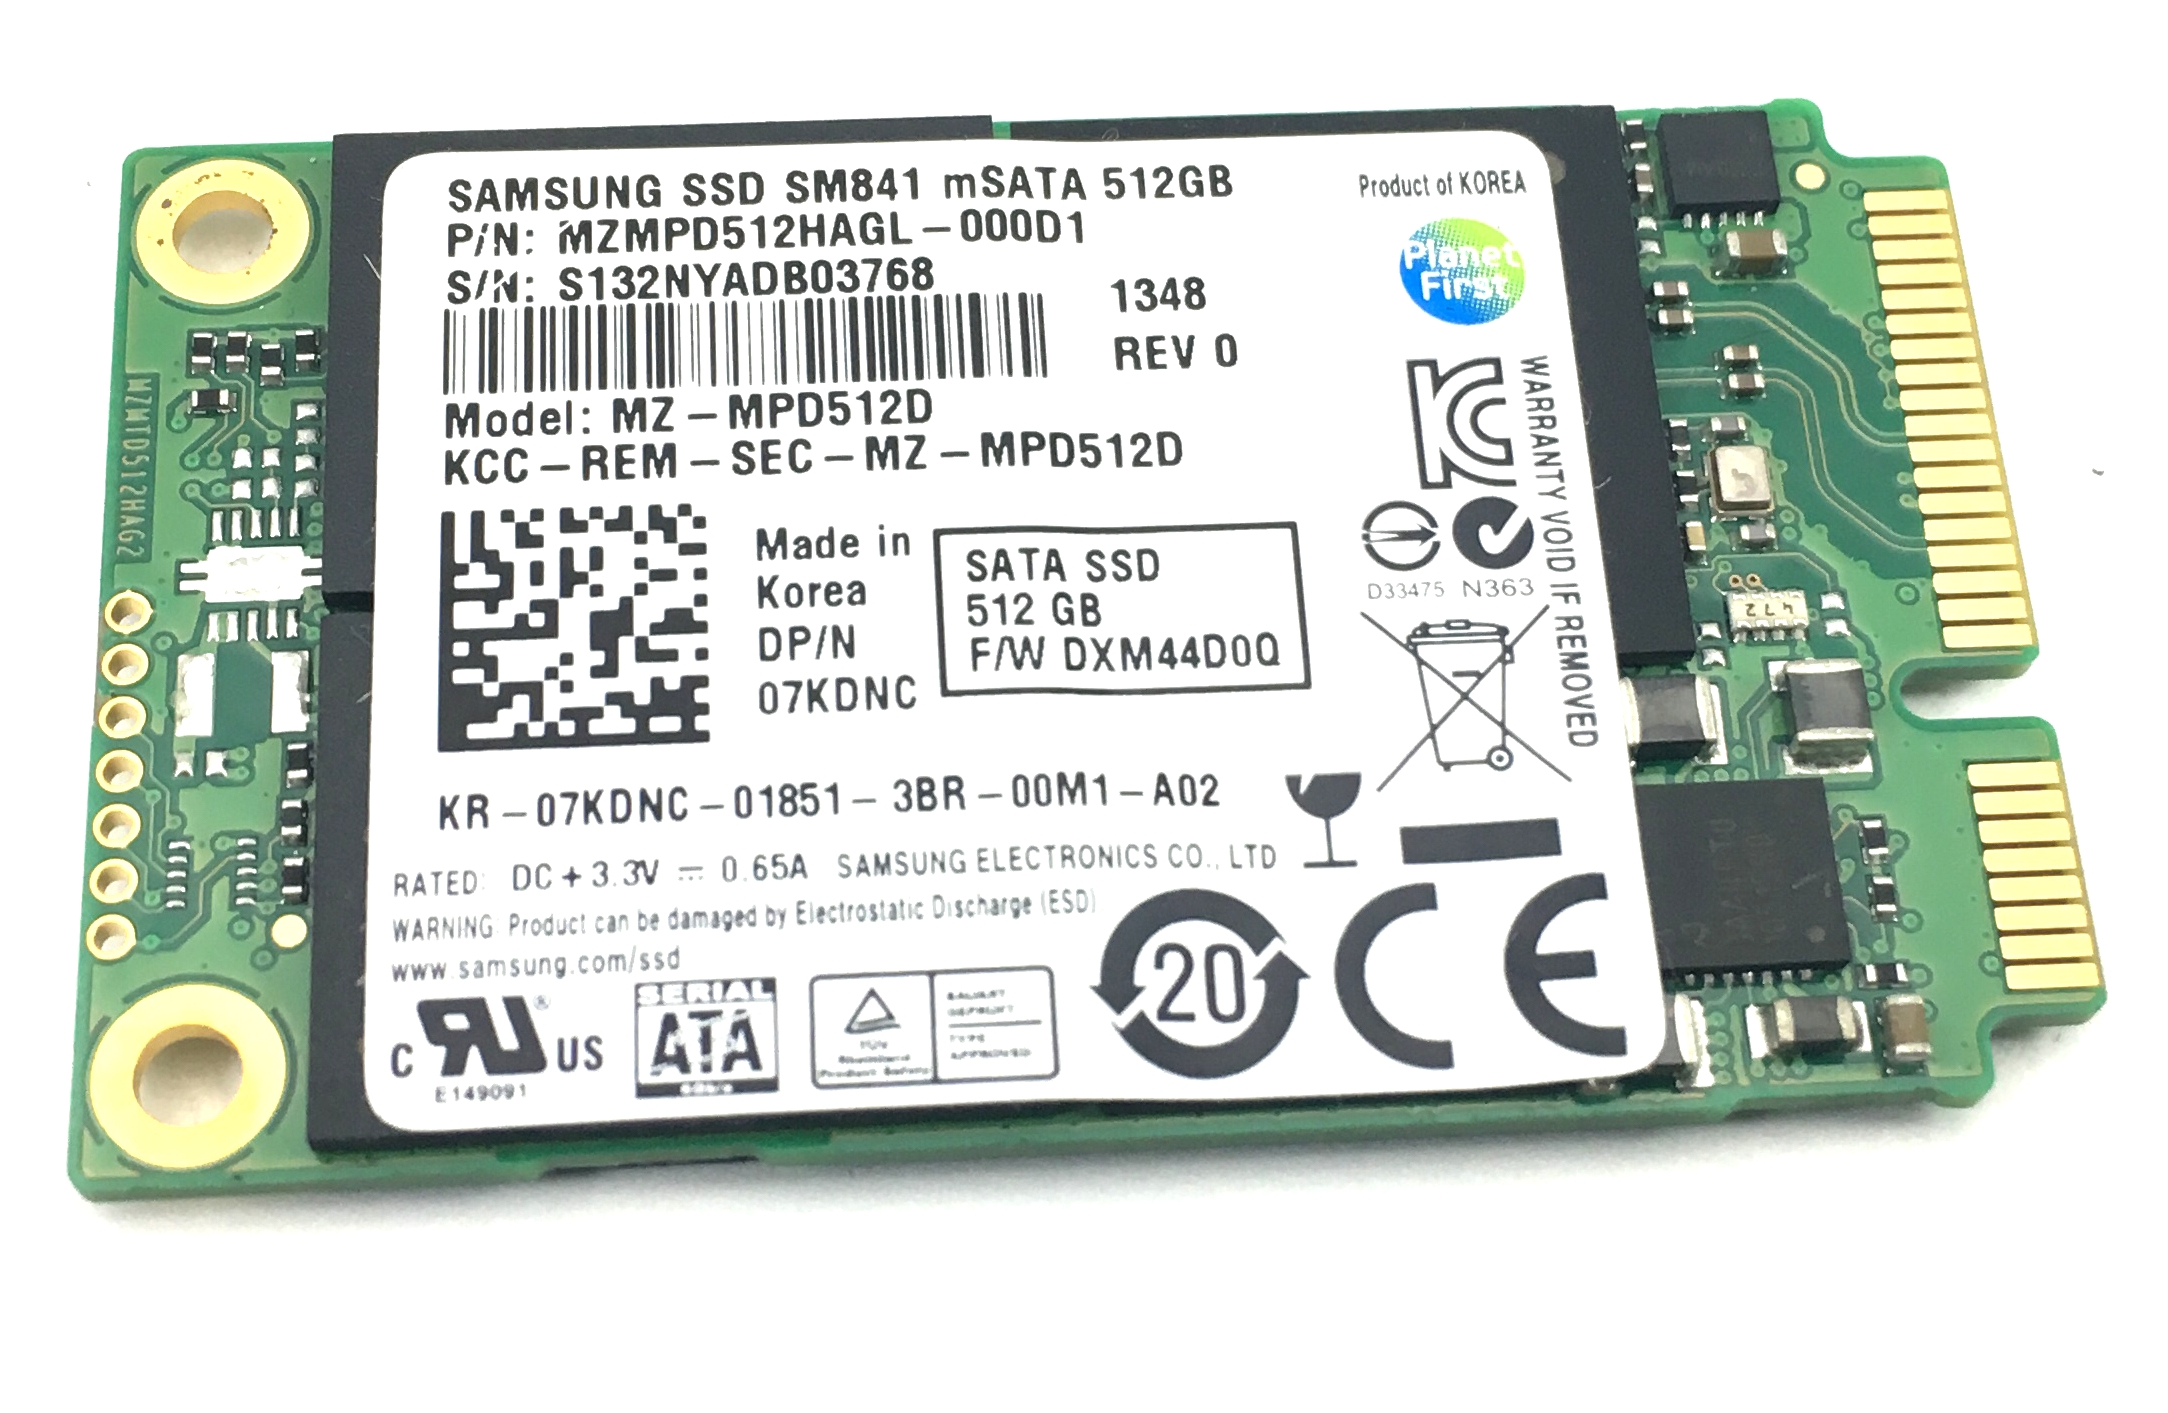 Dell Samsung SSD Sm841 512Gb MSATA Solid State Drive (7KDNC)